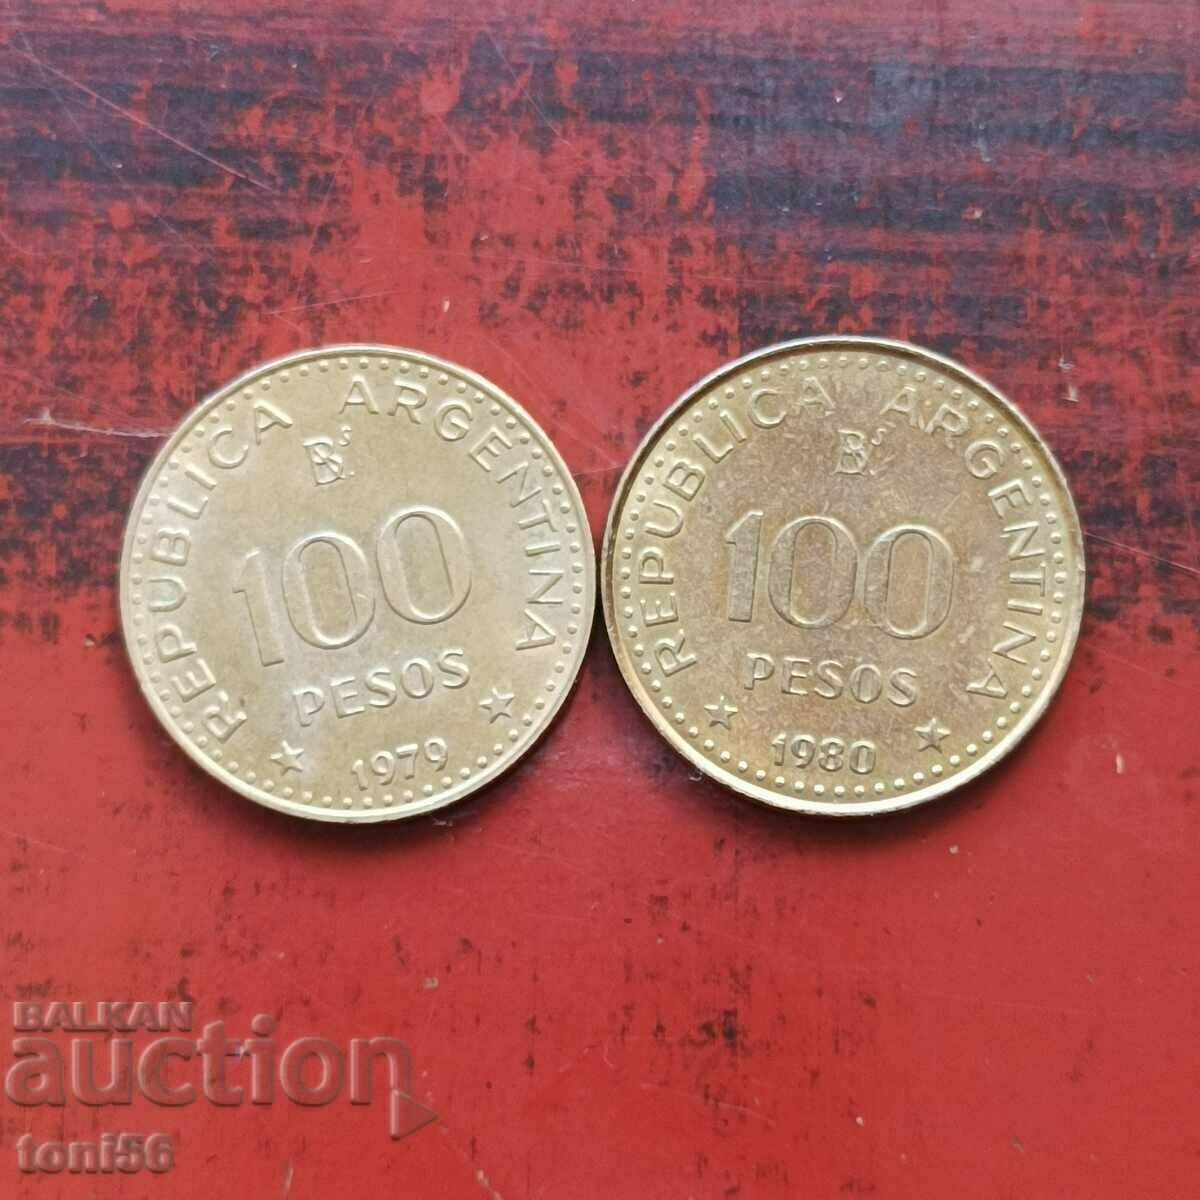 Αργεντινή 2x100 πέσος 1979-80 UNC - από τη συλλογή